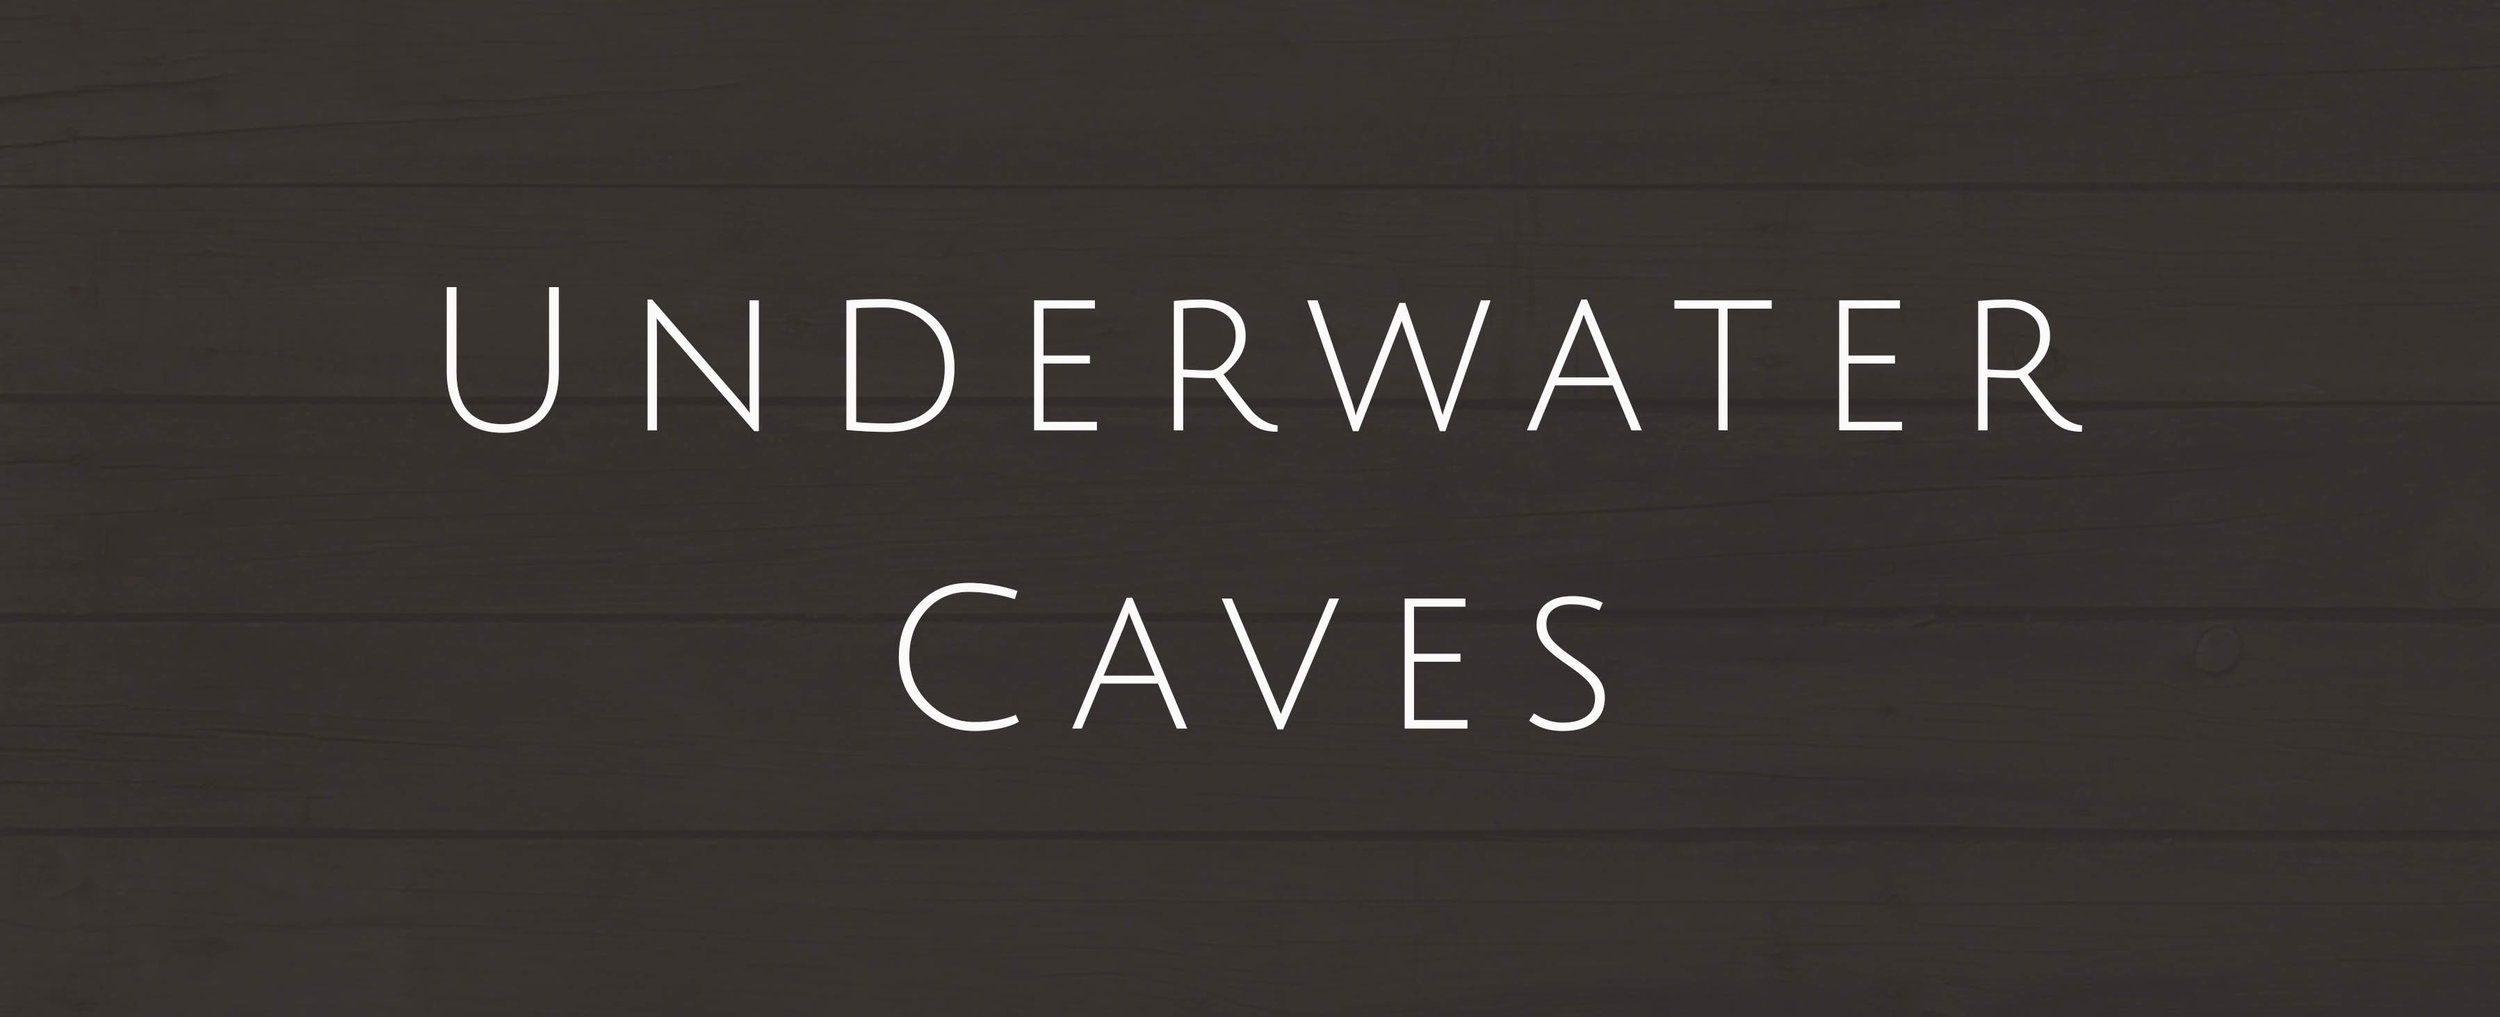 Havasupai - Caves.jpg